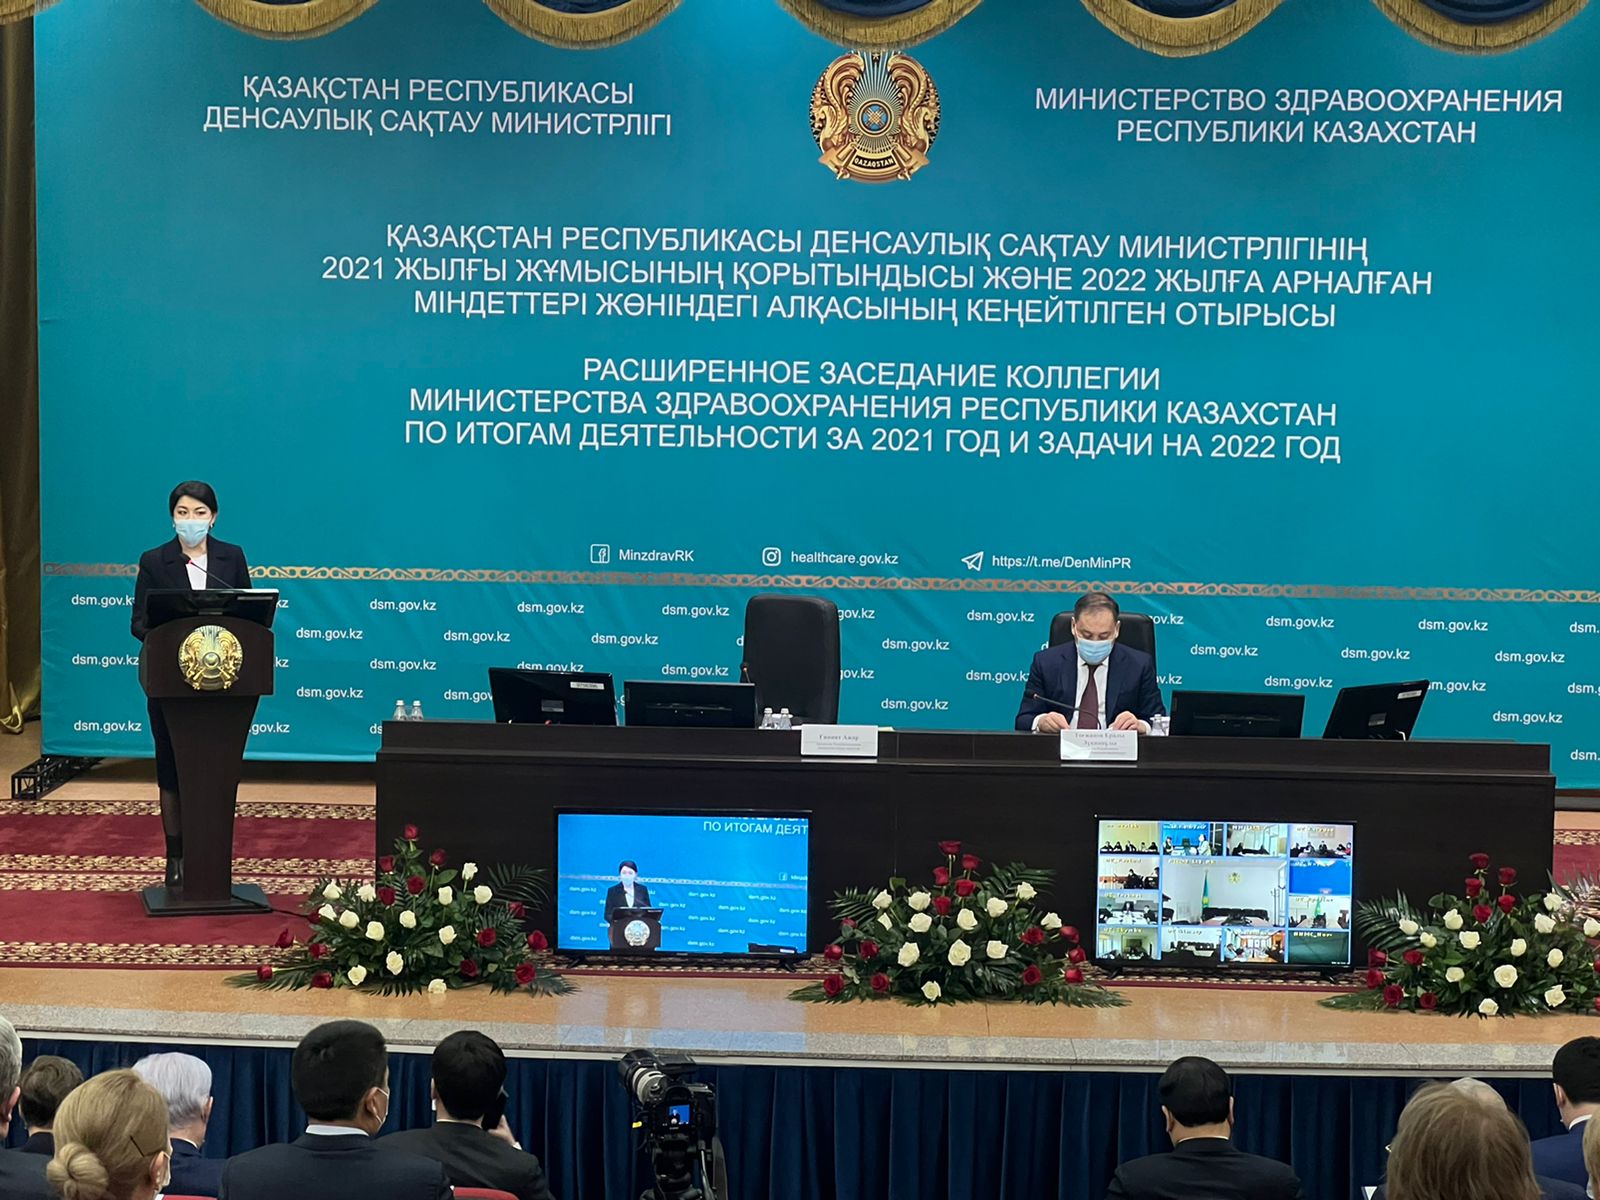 Депутат Мажилиса Парламента Республики Казахстан Елеуов Г.А. принял участие в заседании коллегии Министерства здравоохранения Республики Казахстан.